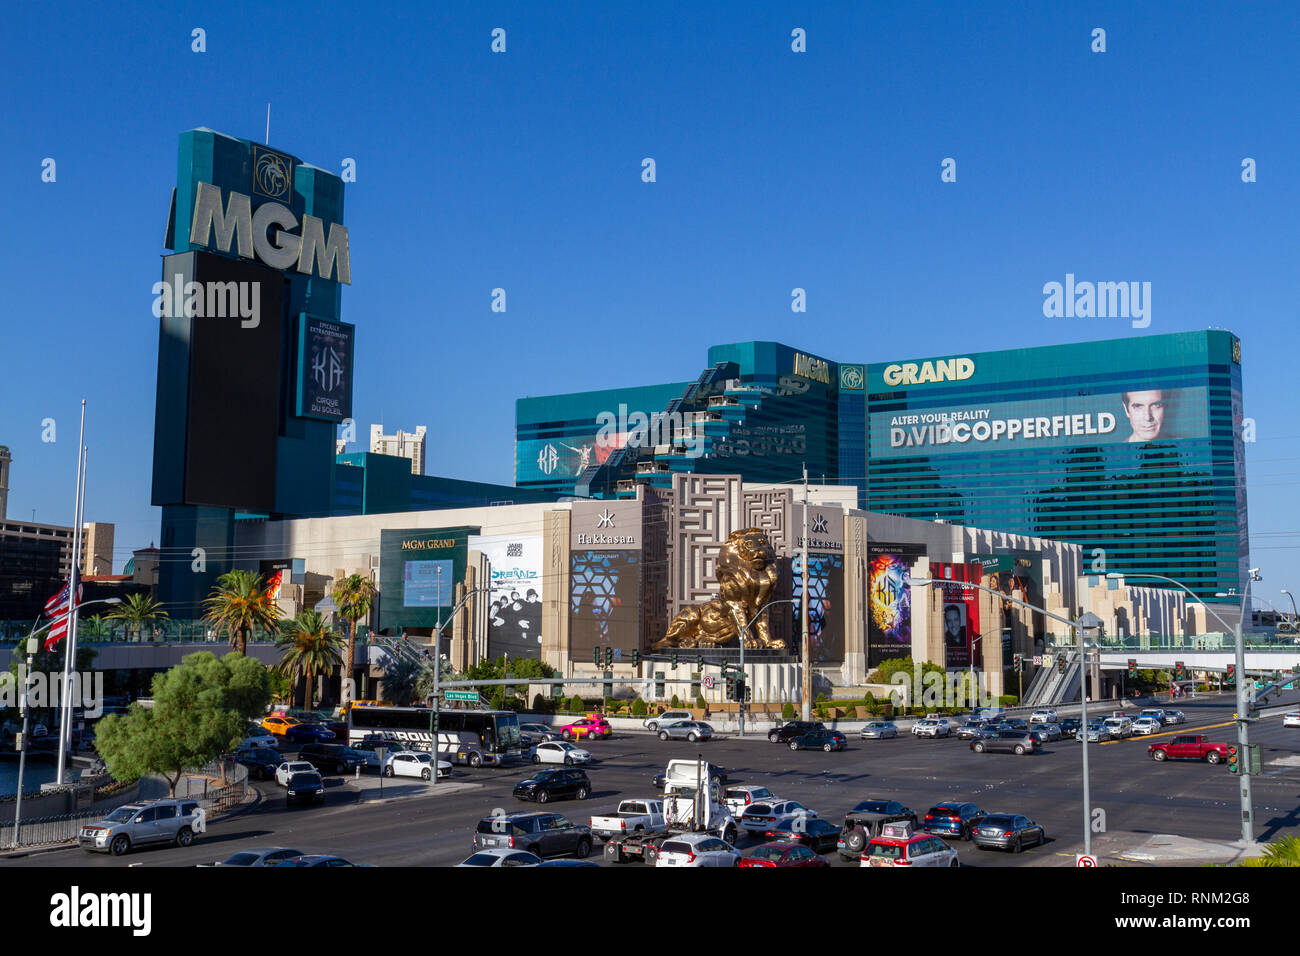 El MGM Grand Hotel de Las Vegas, en el Strip de Las Vegas, Nevada, Estados Unidos. Foto de stock